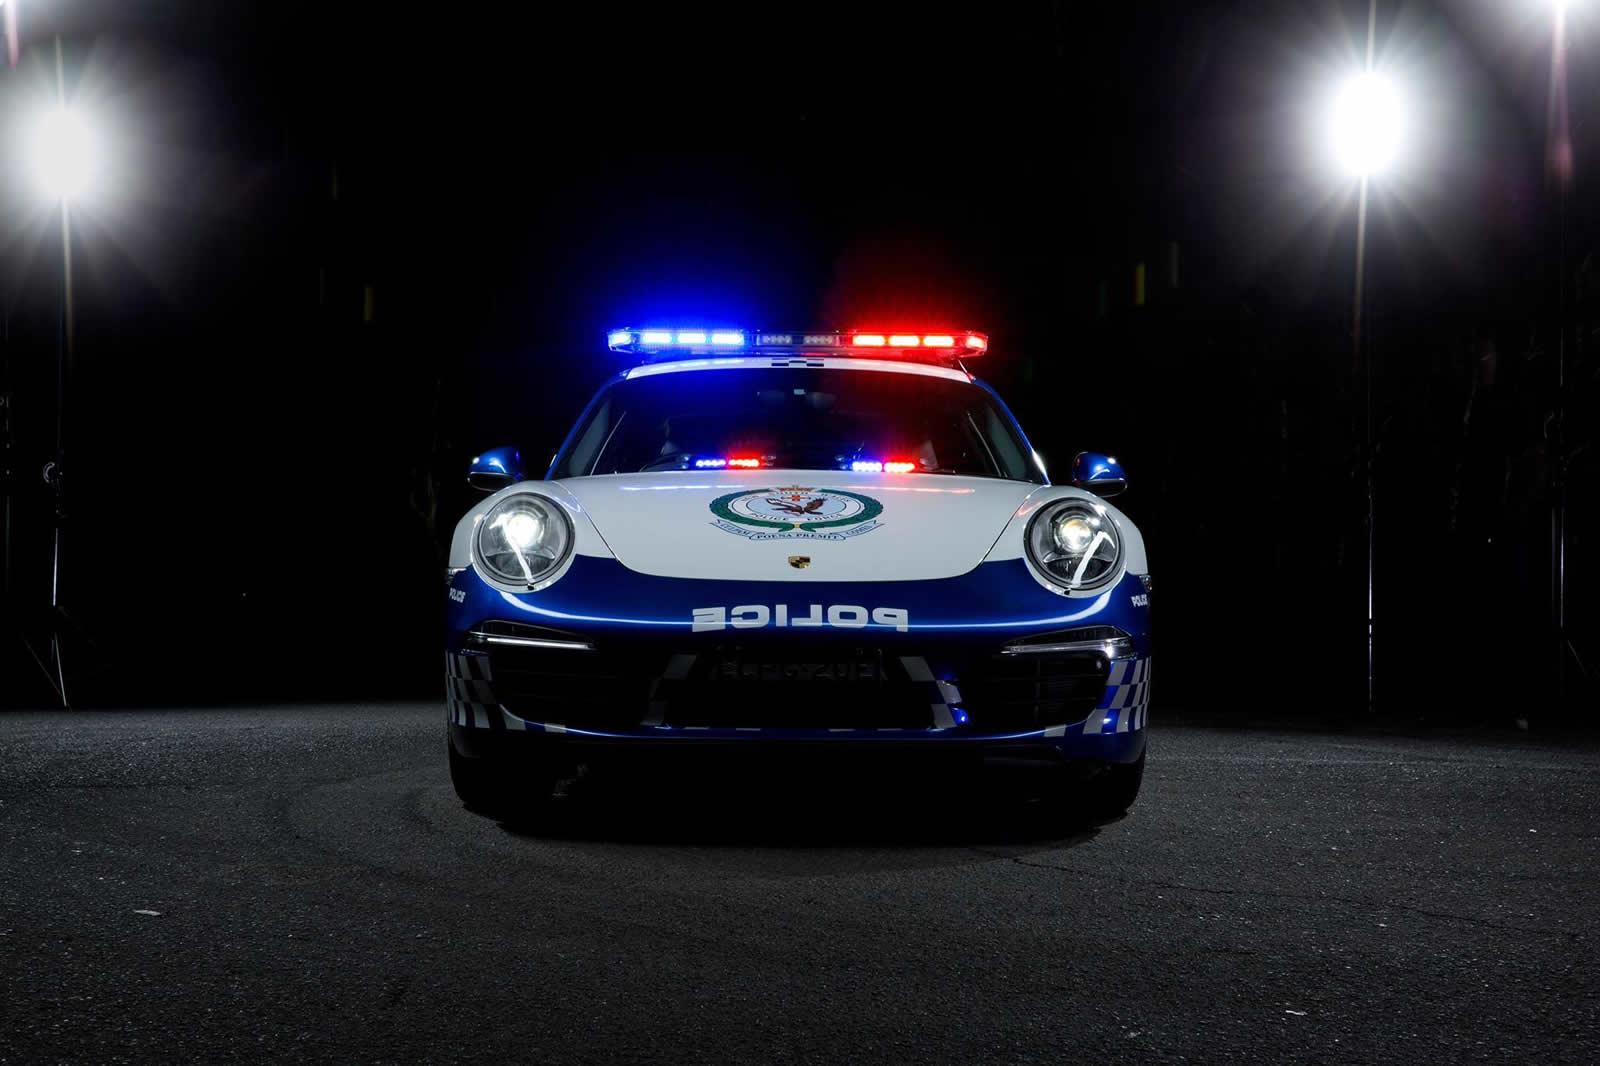 NSW Police gets Porsche 911 Carrera police car - ForceGT.com